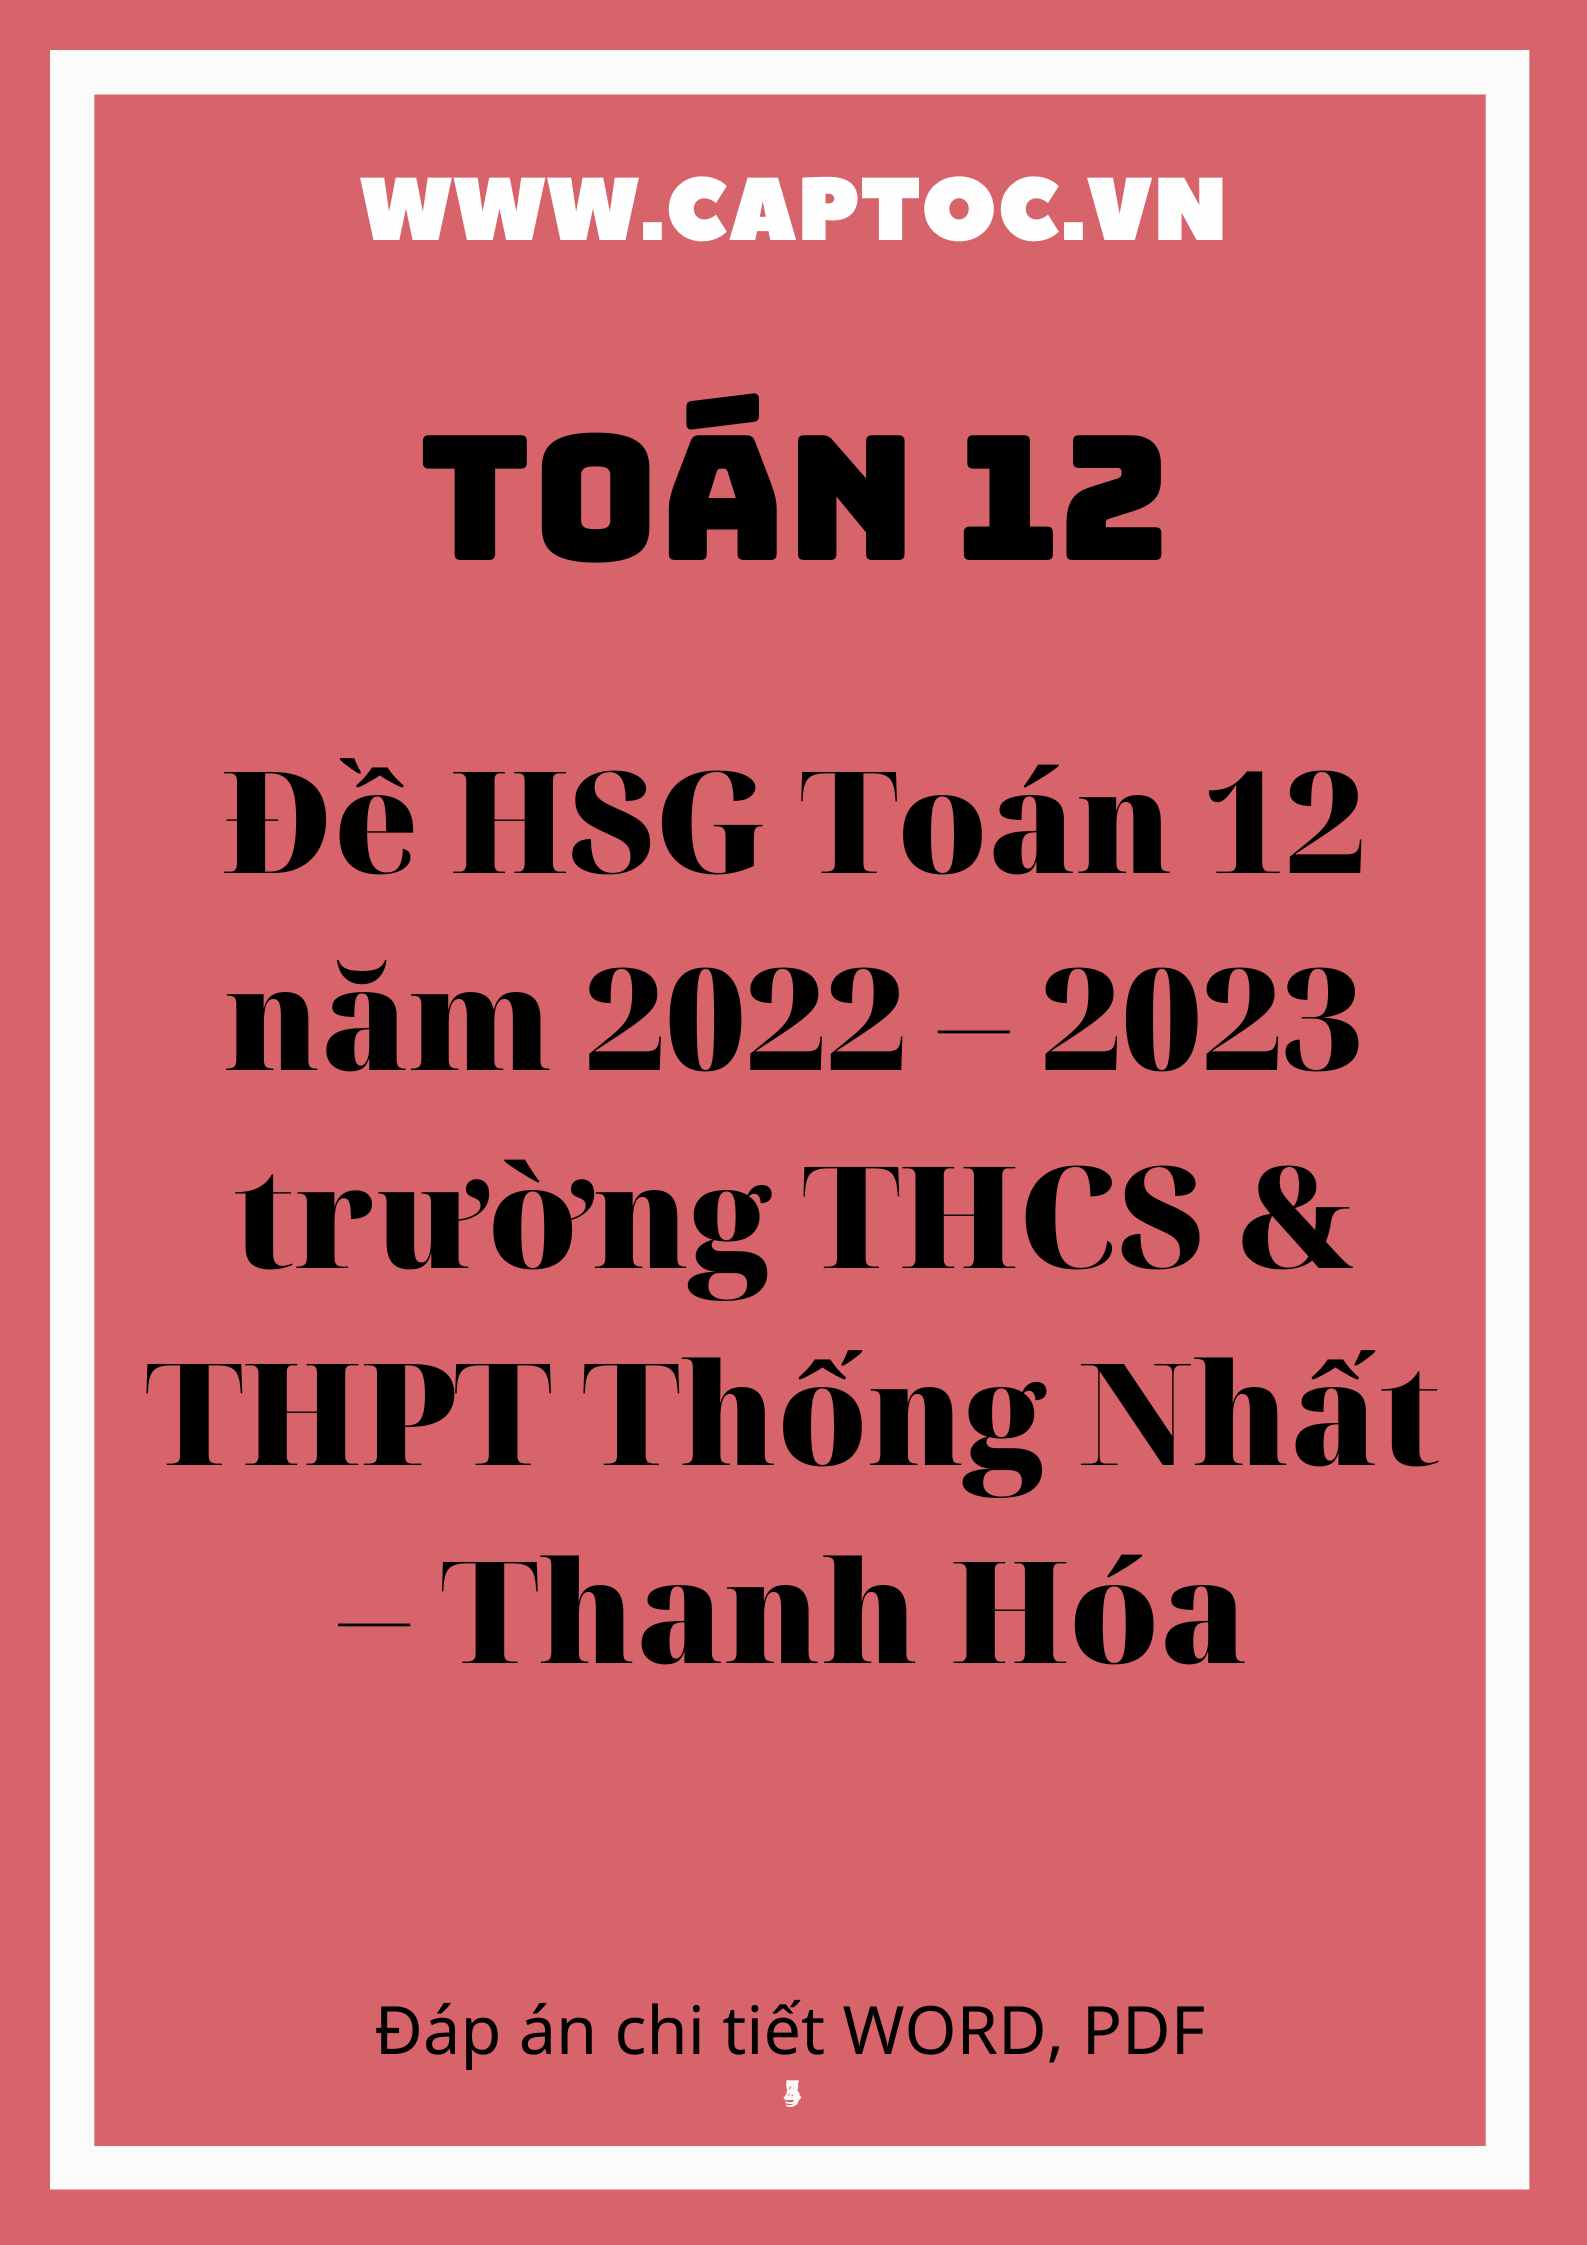 Đề HSG Toán 12 năm 2022 – 2023 trường THCS & THPT Thống Nhất – Thanh Hóa